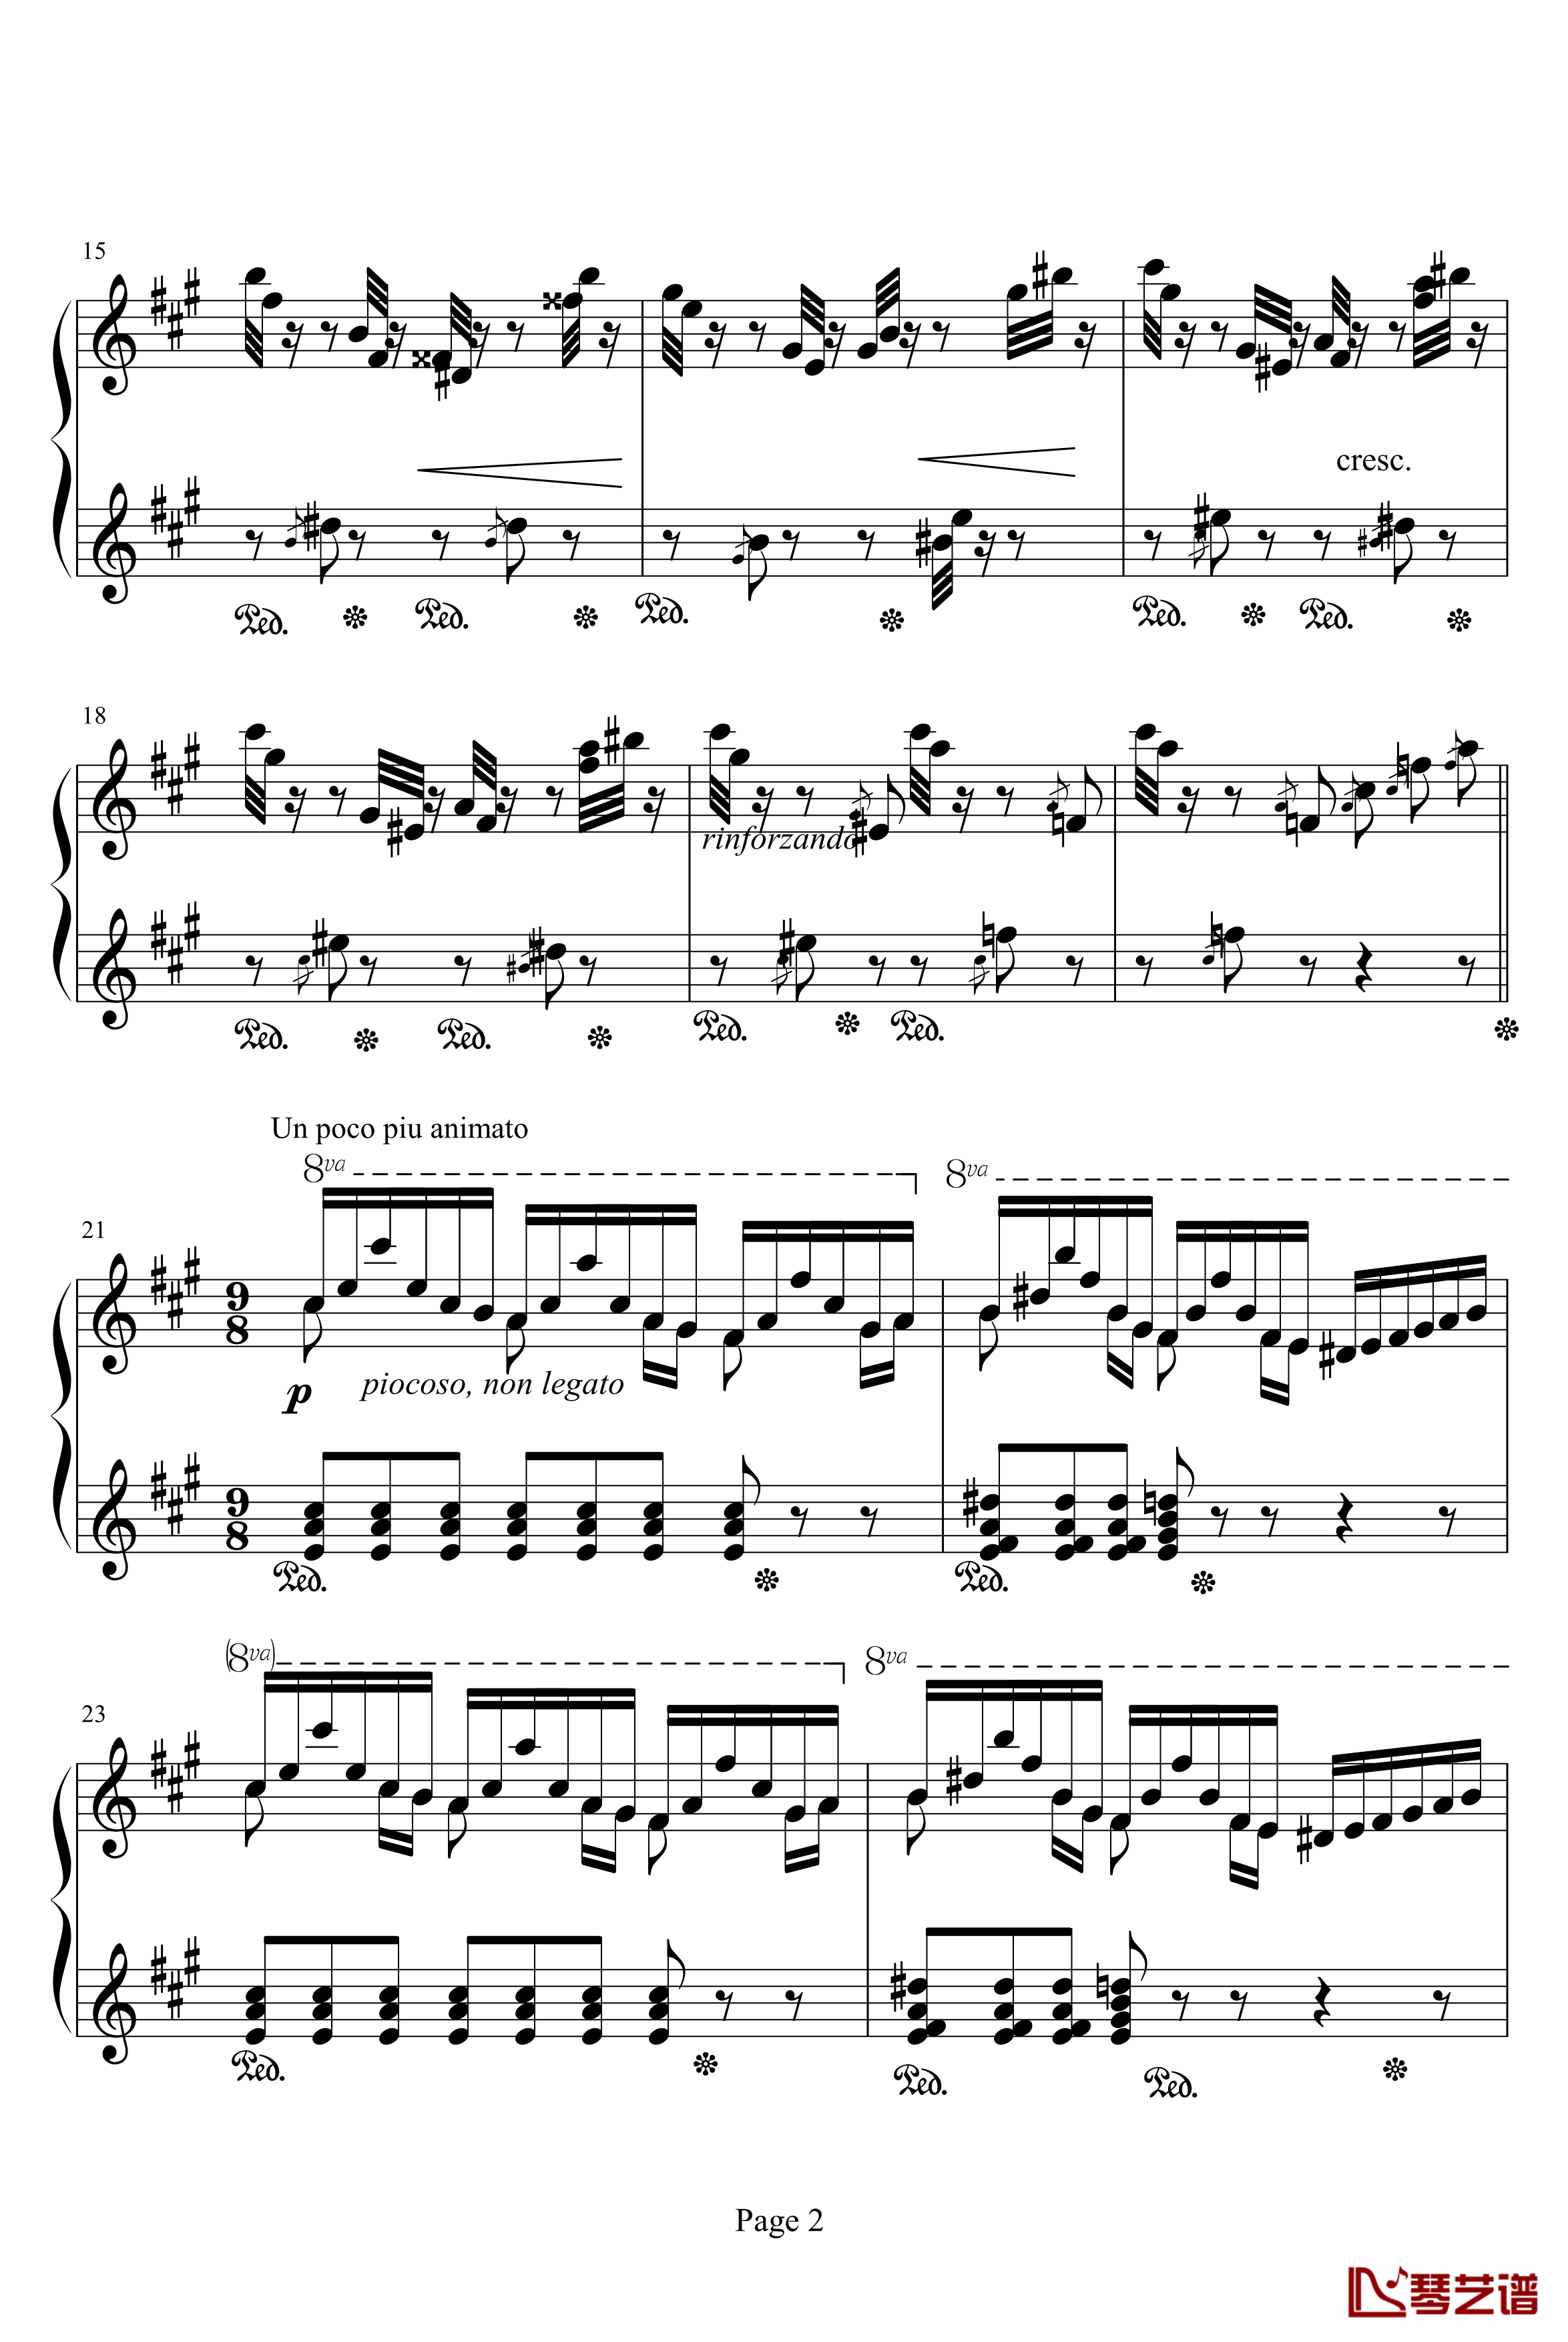 李斯特音乐会练习曲之二钢琴谱-侏儒之舞-李斯特2